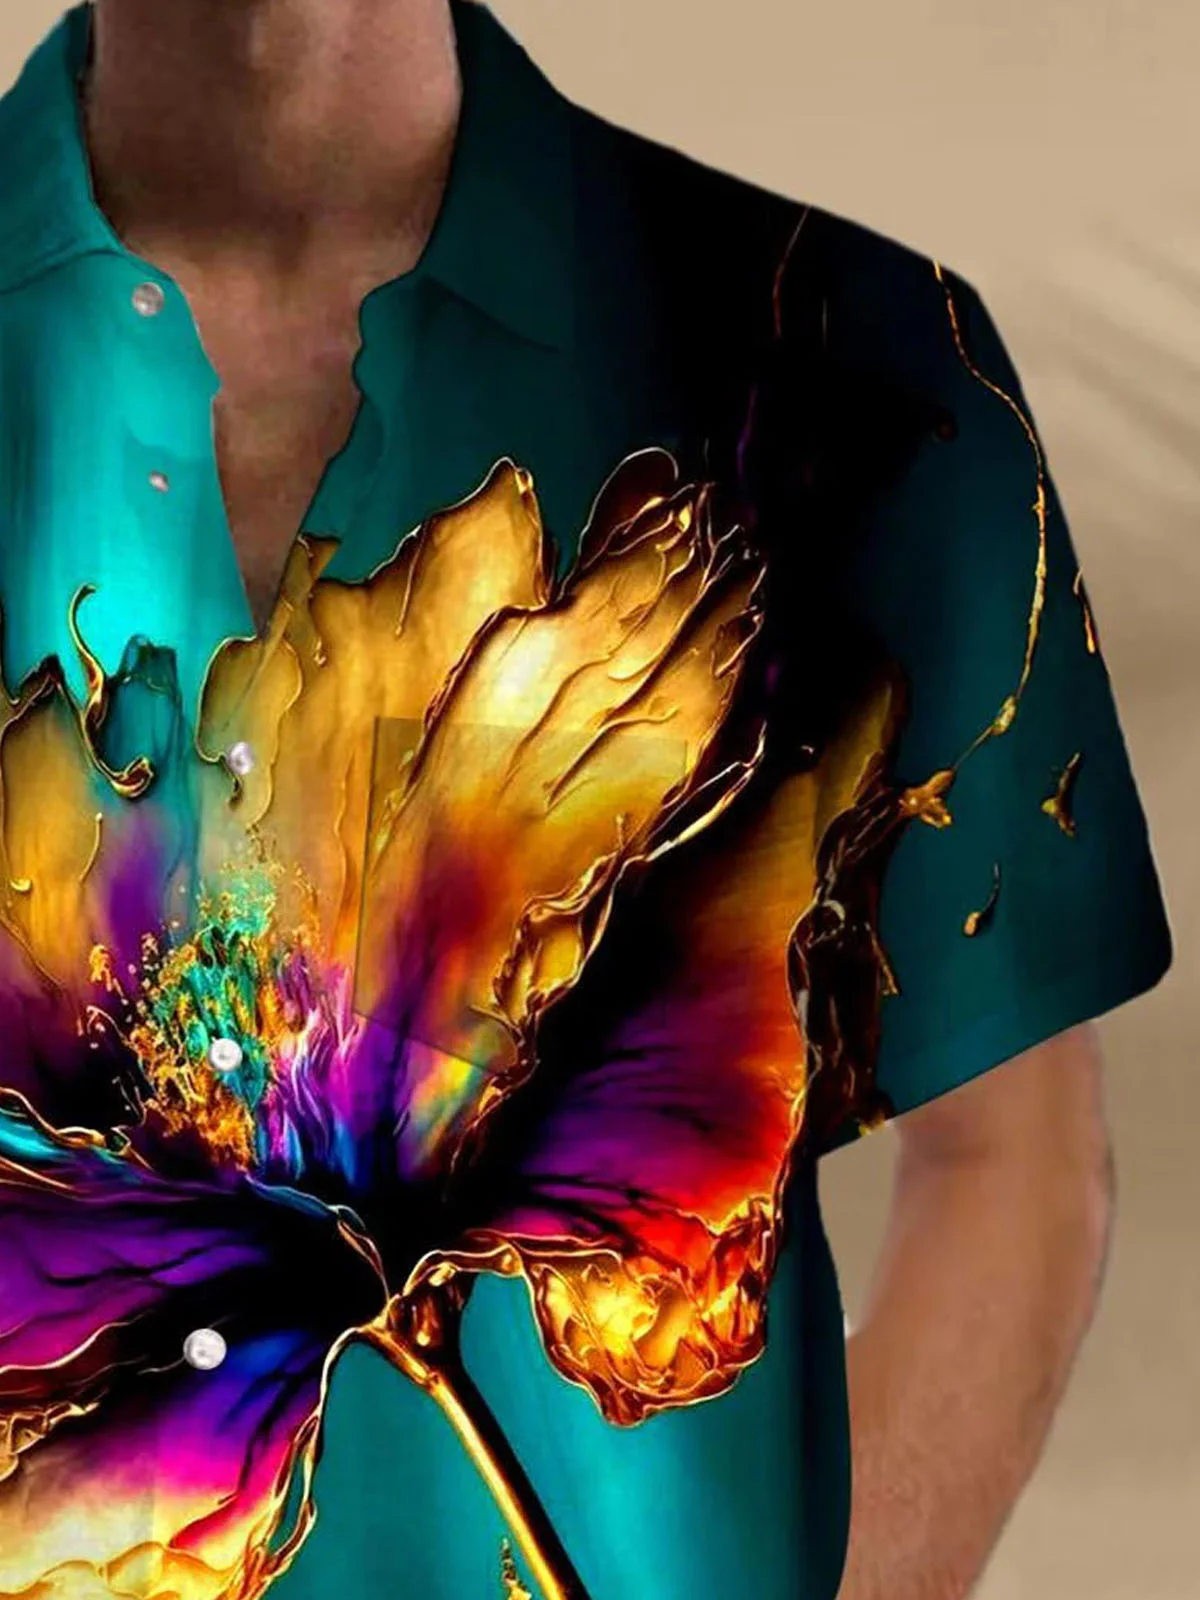 Royaura®Hawaiian Art Floral 3D Creative Print Men's Button Pocket Short Sleeve Shirt